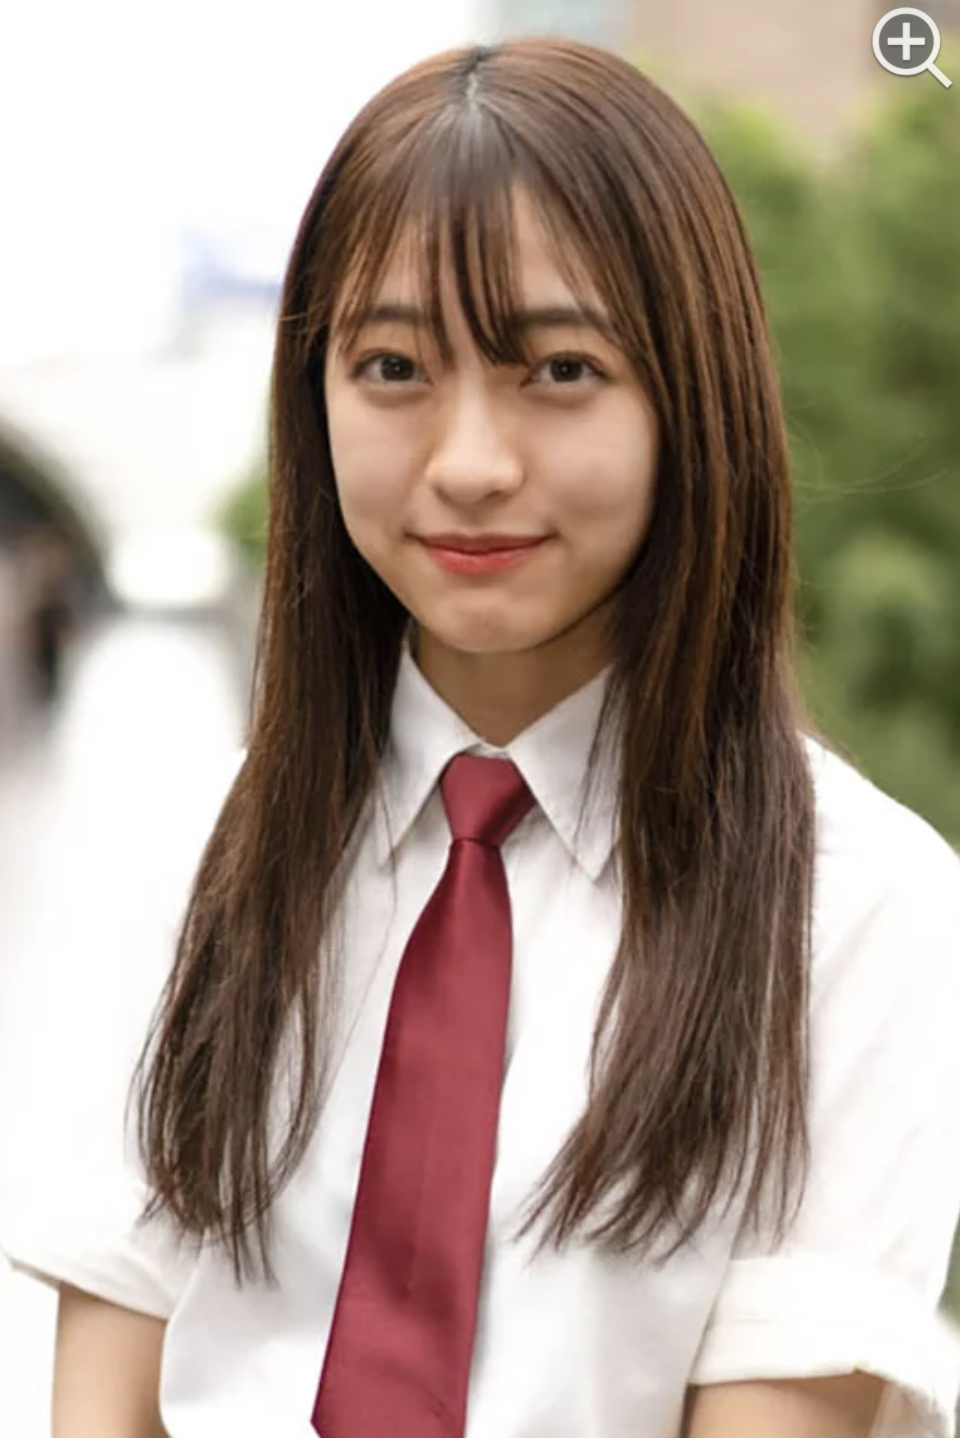 日本一かわいい女子高生 を決定するコンテスト 女子高生ミスコン ファイナリスト暫定10名が決定 株式会社エイチジェイ